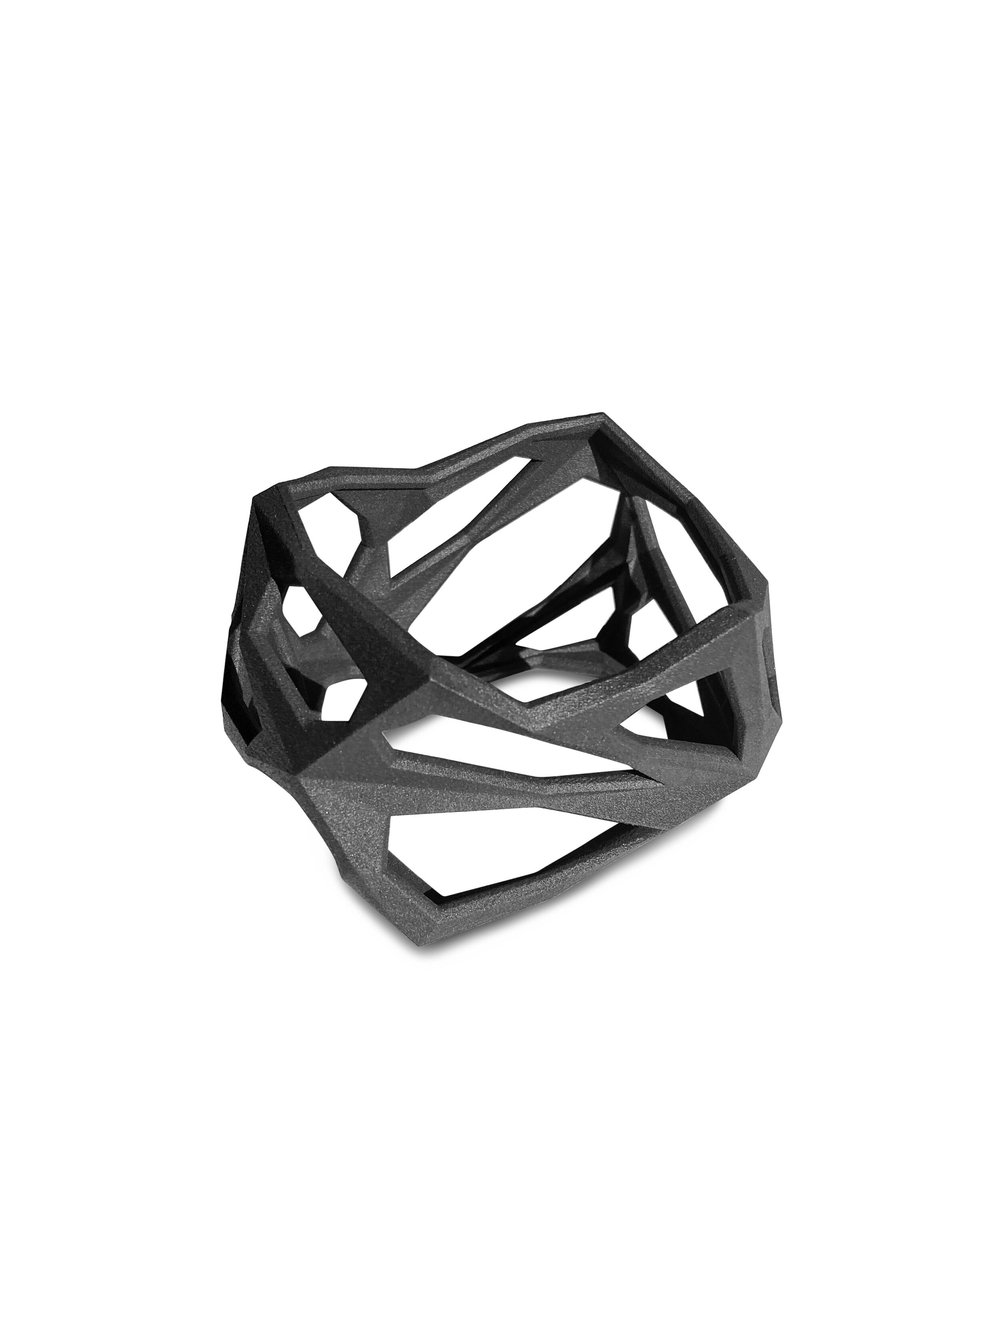 Lada-Legina-Black-Bracelet-Squared-3d-Printed-Nylon.jpg